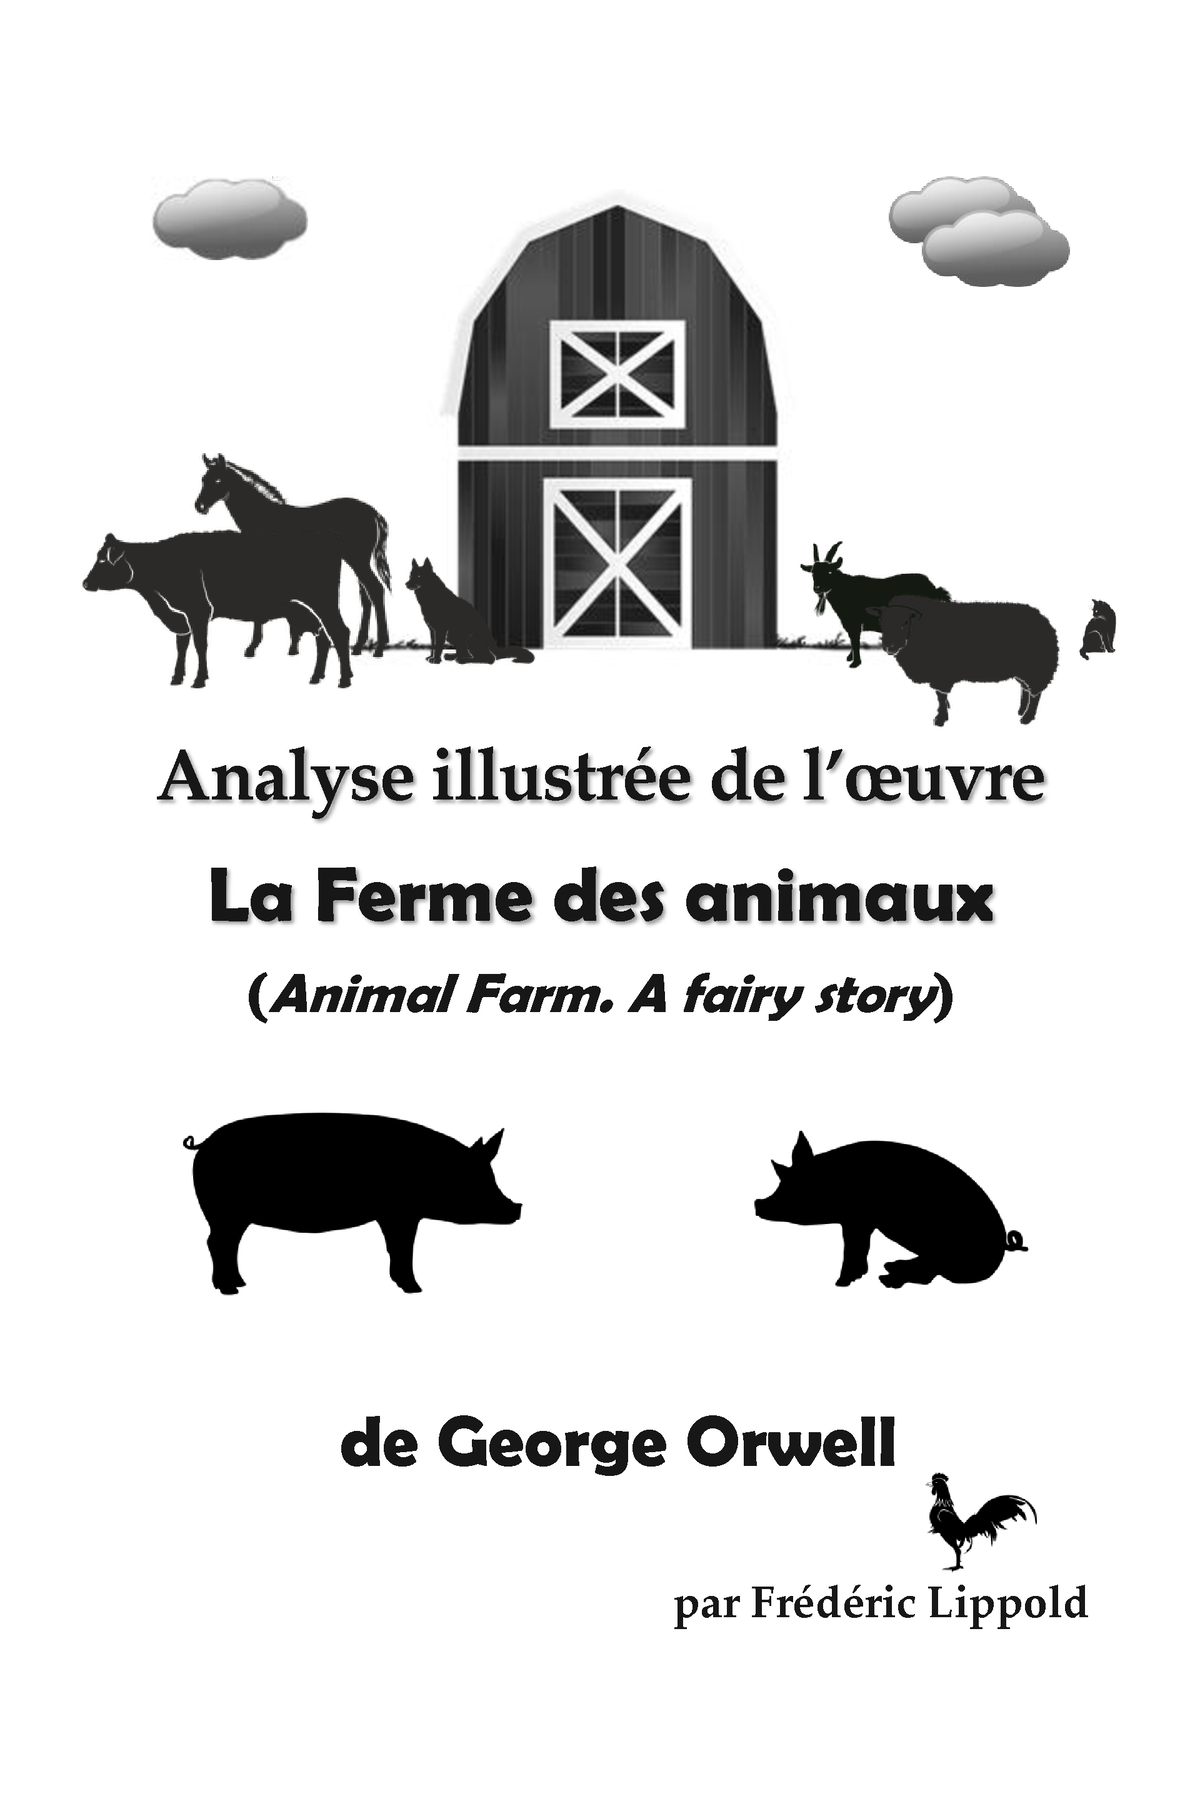 La Ferme des animaux, George Orwell, documents d'accompagnement de l'oeuvre  (contexte) - Comptoir des cours